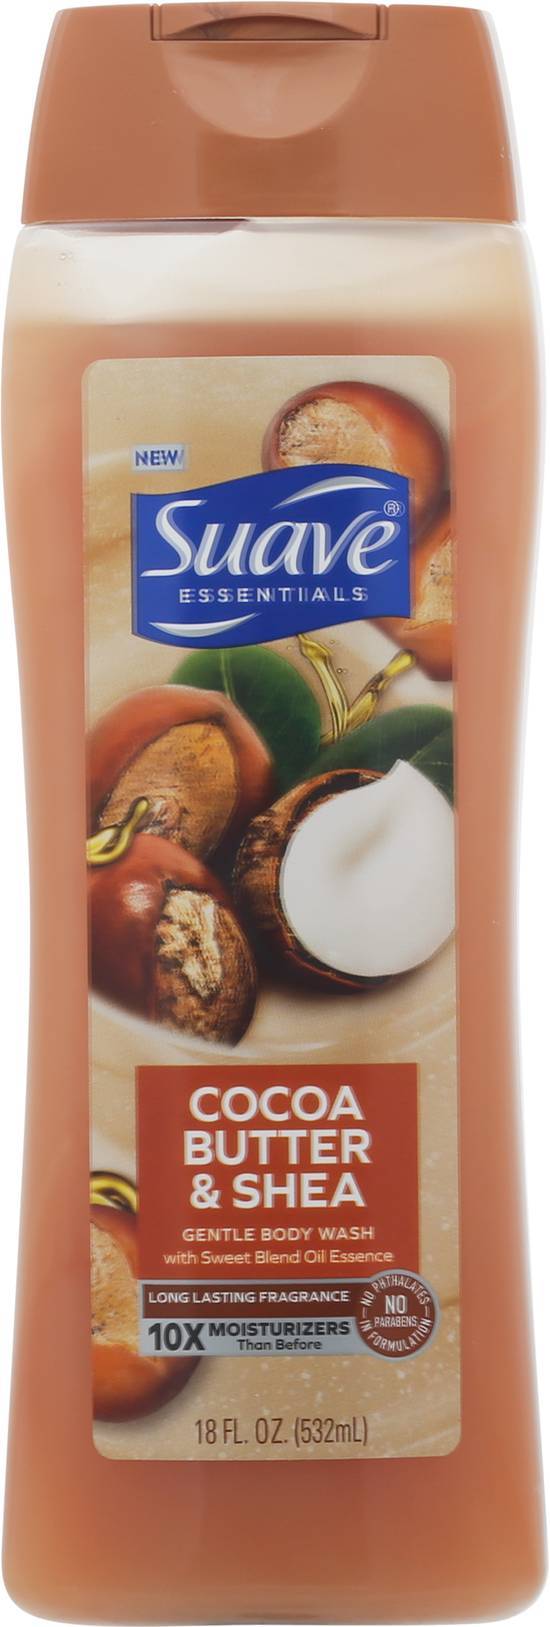 Suave Essentials Gentle Body Wash (cocoa butter-shea)